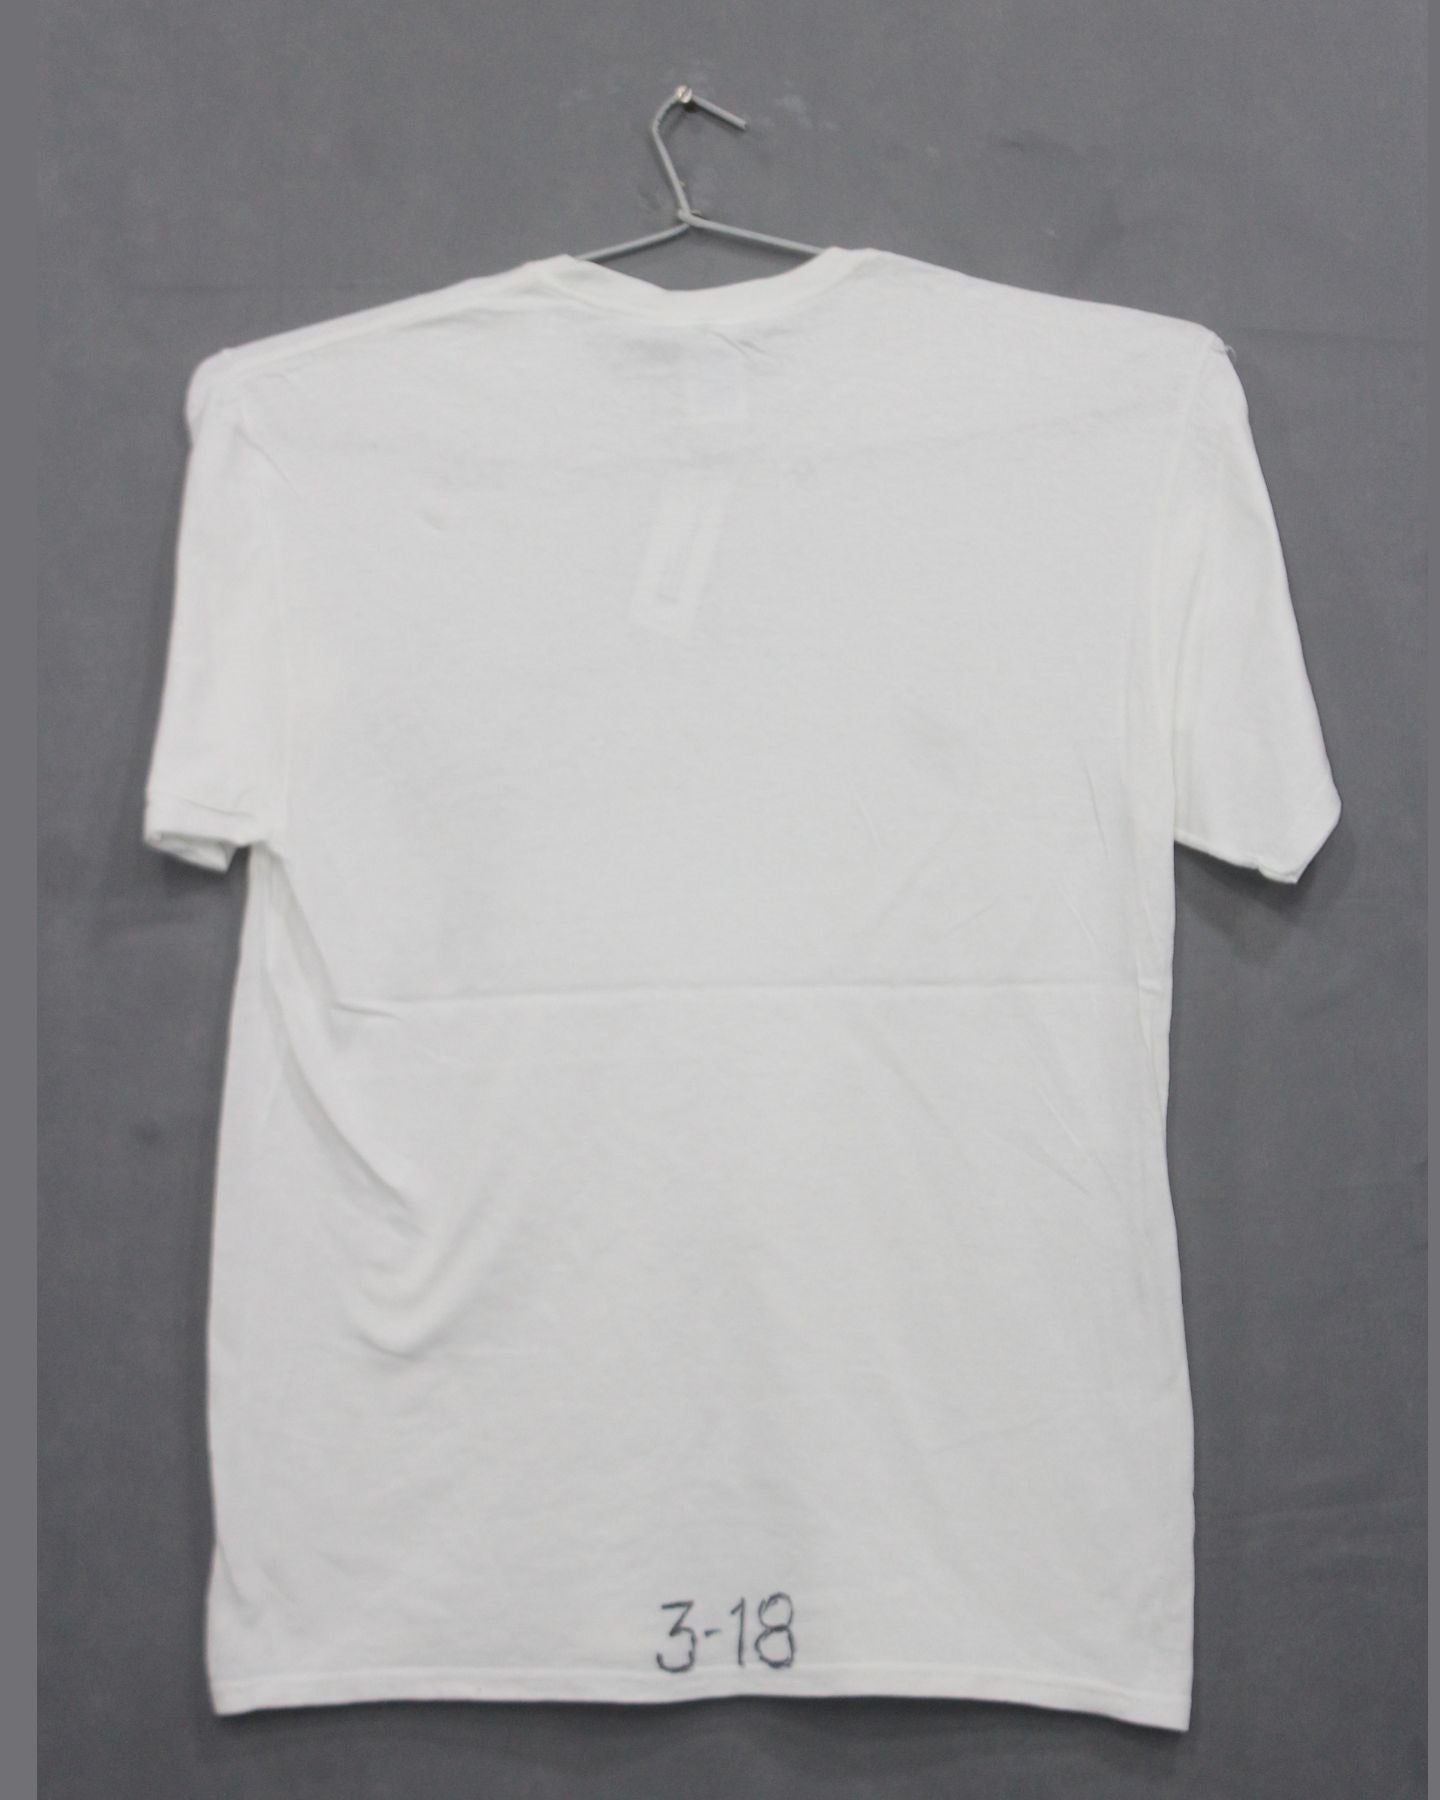 Delta Pro Weight Branded Original For Cotton Round Neck Men T Shirt